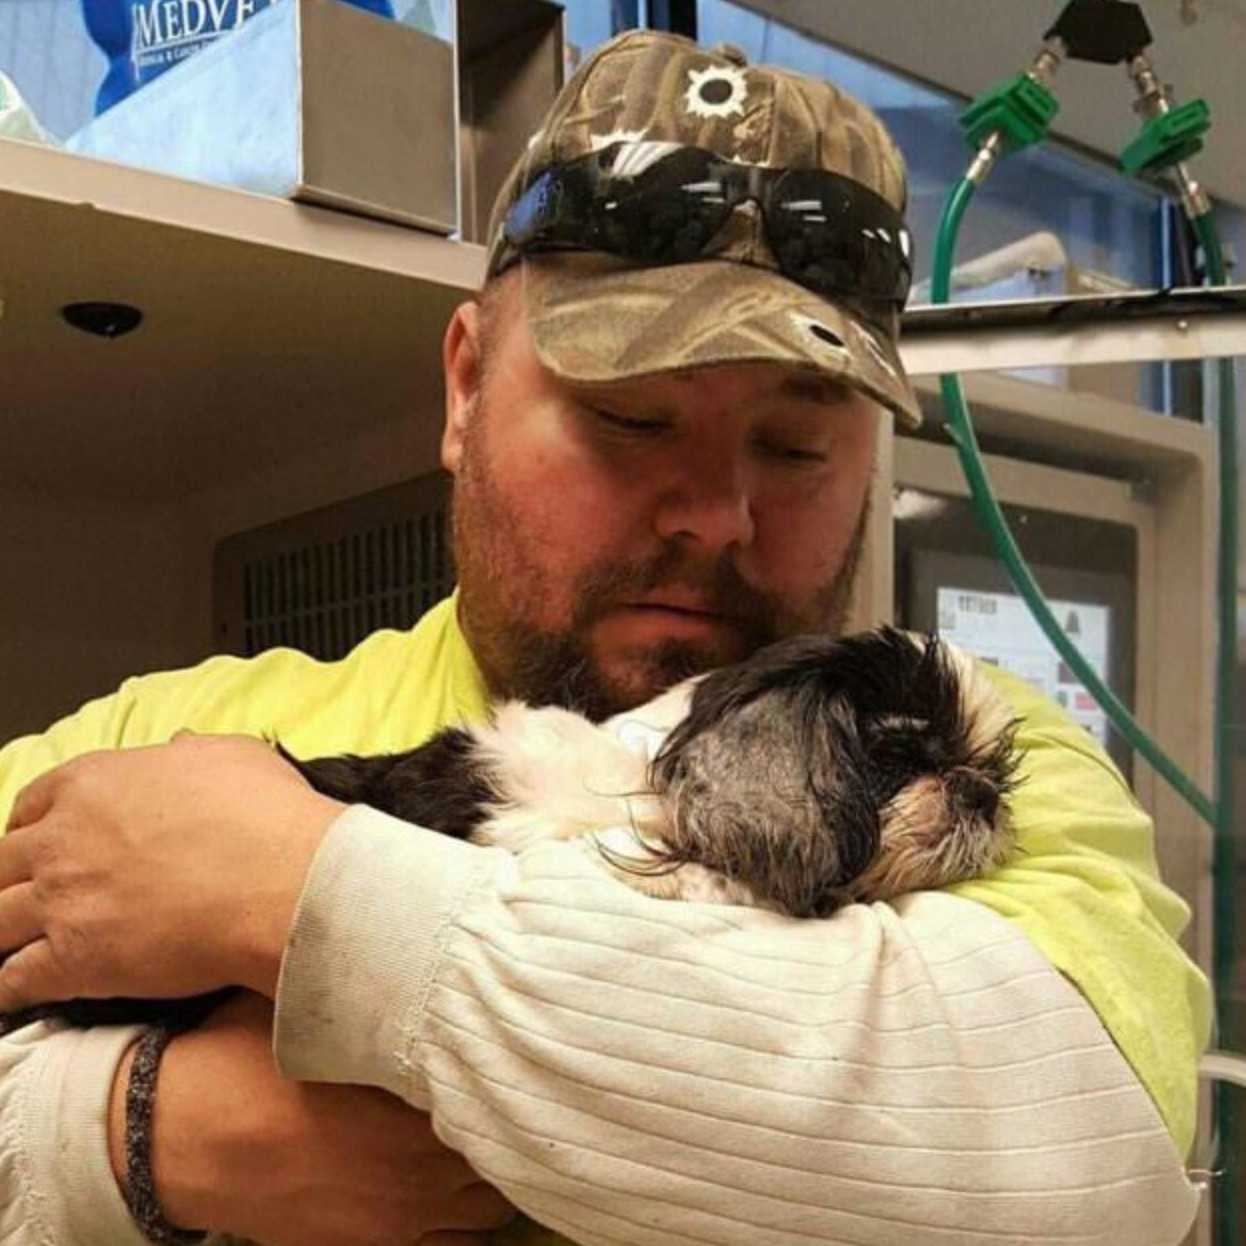 Veterinaria sacrifica por error a una perra, pero ella lucha para sobrevivir contra viento y marea